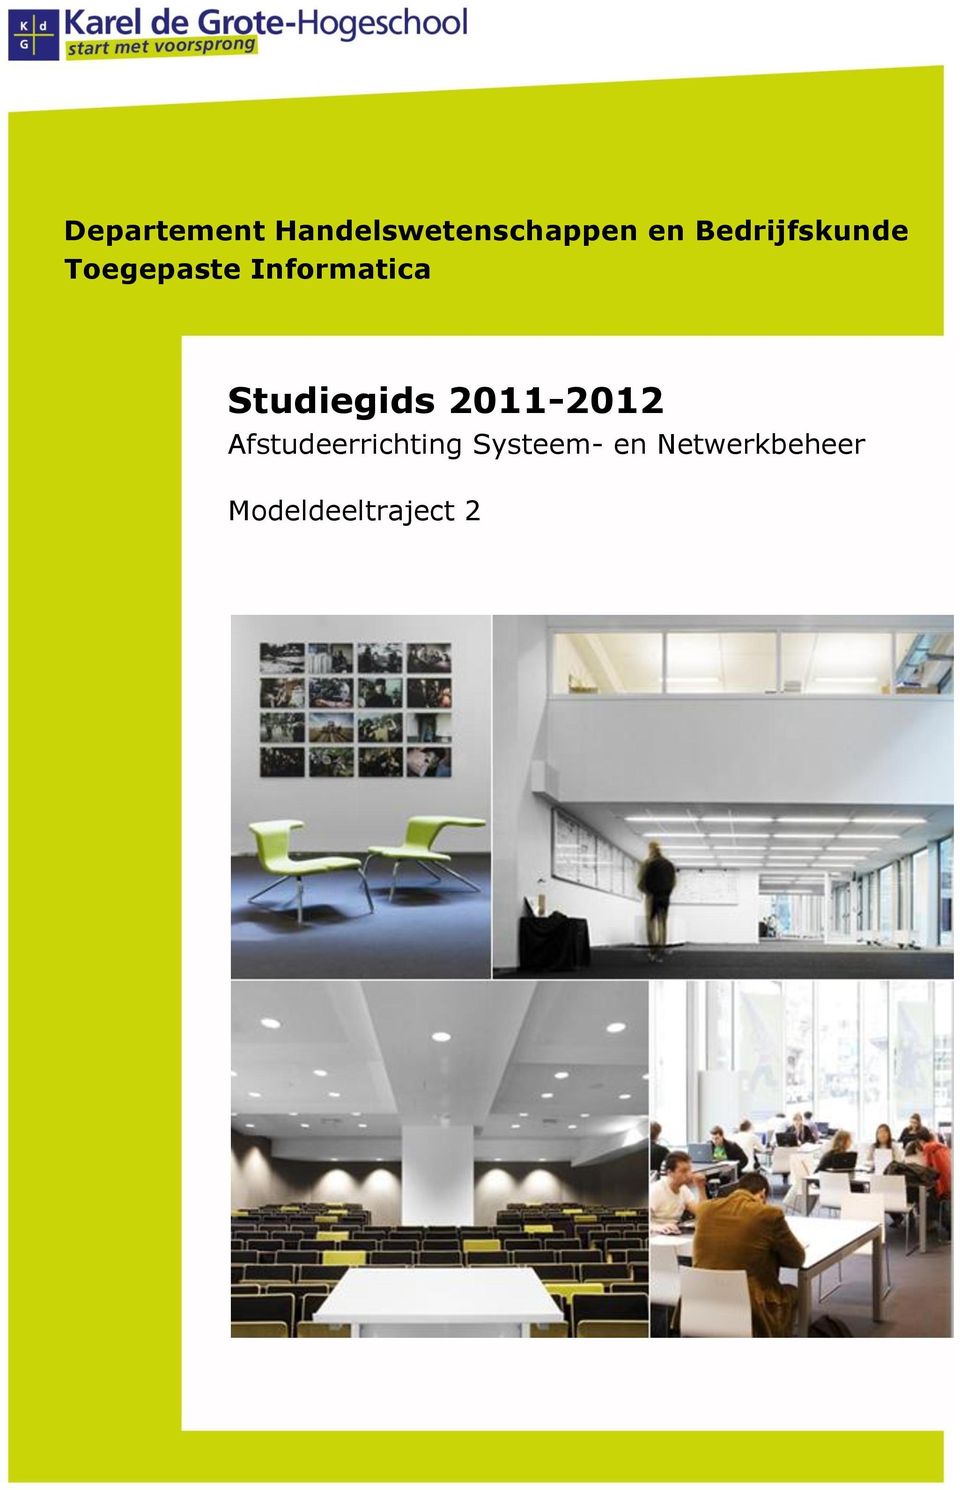 Studiegids 2011-2012 Afstudeerrichting